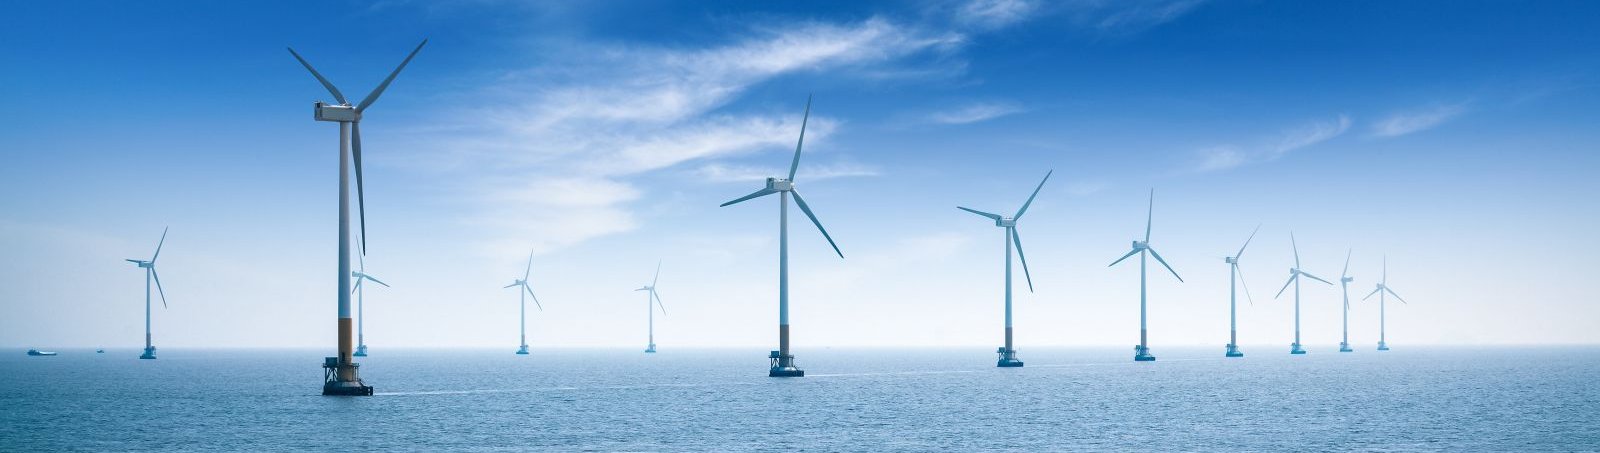 PKN Orlen chce budować farmę wiatrową na Bałtyku. Jest przetarg. Fot. chuyuss/Shutterstock